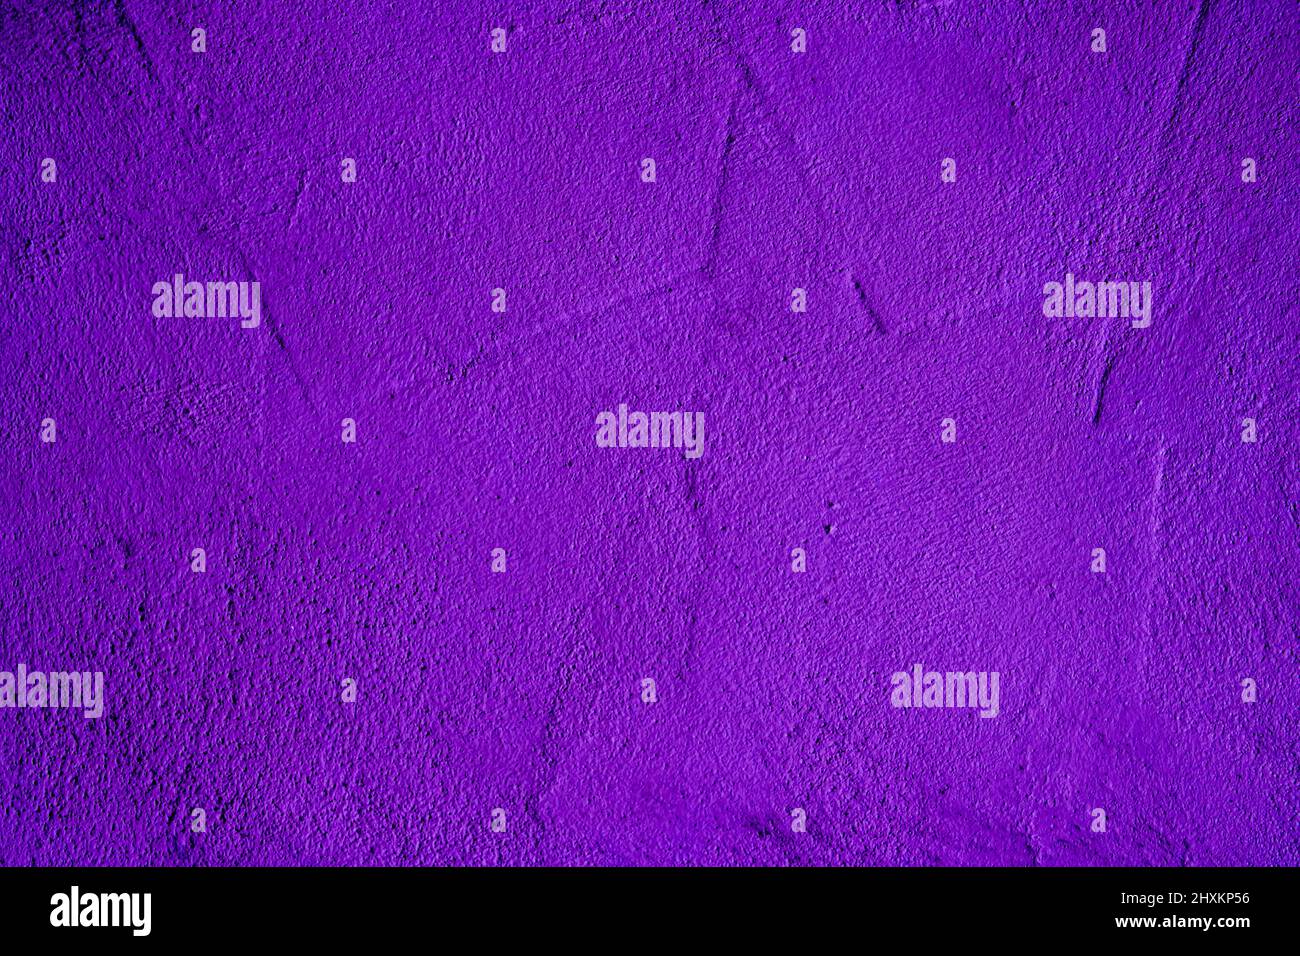 Sfondo di colore viola con texture di diverse sfumature di viola e viola Foto Stock